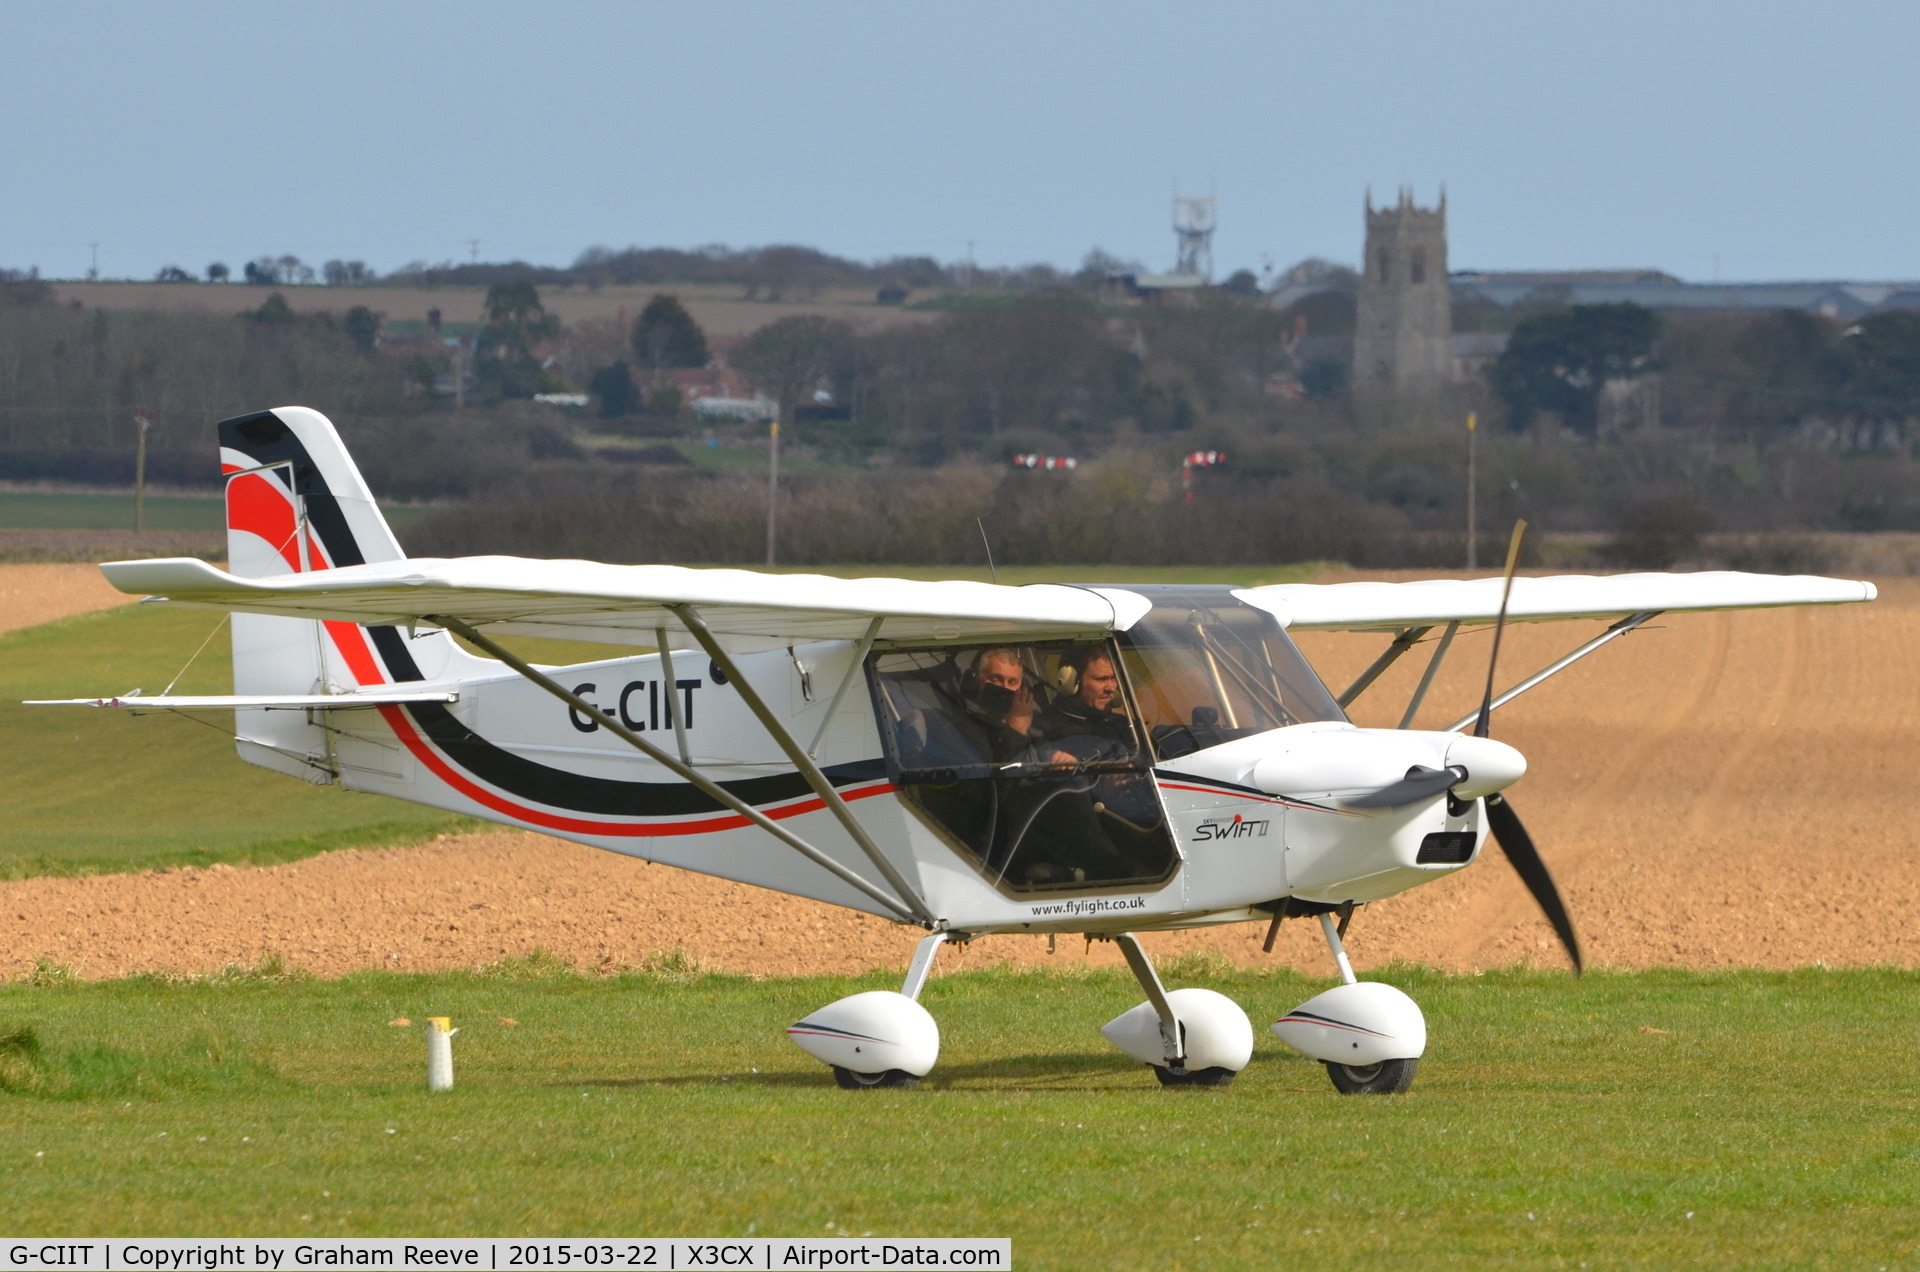 G-CIIT, 2014 Best Off SkyRanger Swift 912(1) C/N BMAA/HB/644, Just landed at Northrepps.